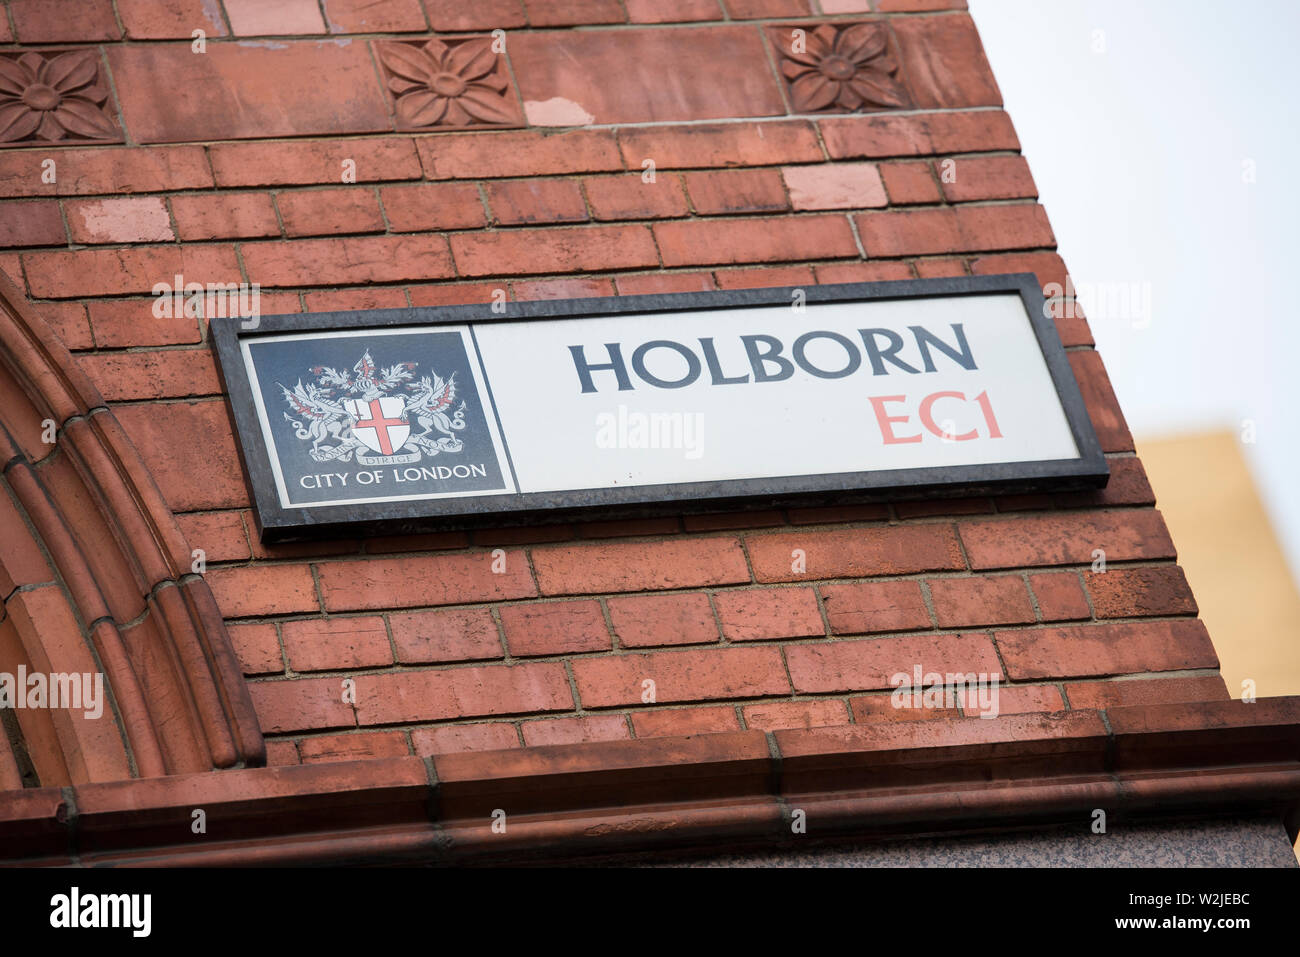 Calle signo de esmalte en Holborn London, EC1 Foto de stock